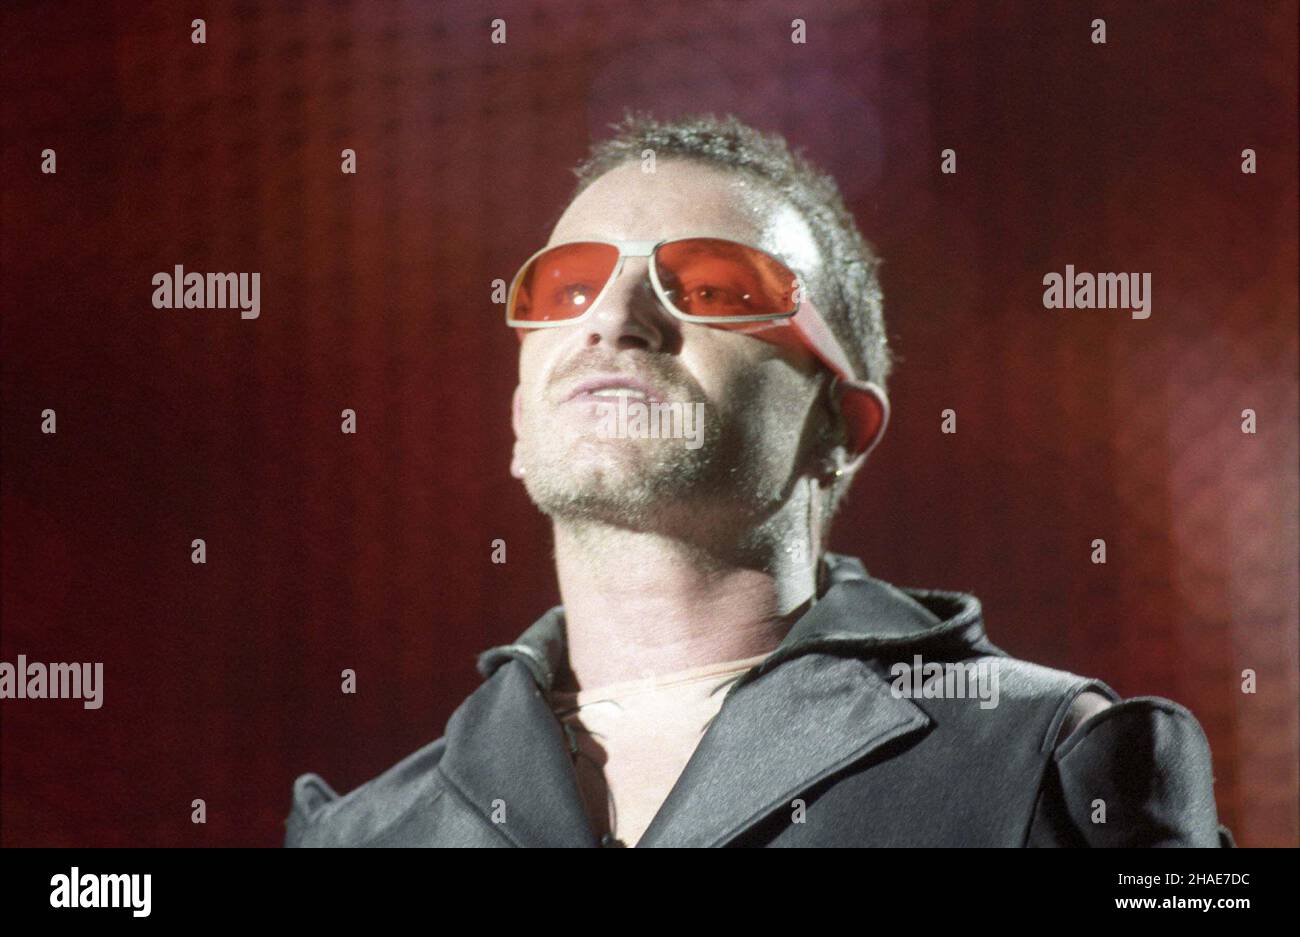 Warszawa 1997-08-12. Jedyny koncert w Polsce zespo³u U2. Nz: wokalista zespo³u - Bono podczas wystêpu.  soa  PAP/CAF/Radek Pietruszka Stock Photo